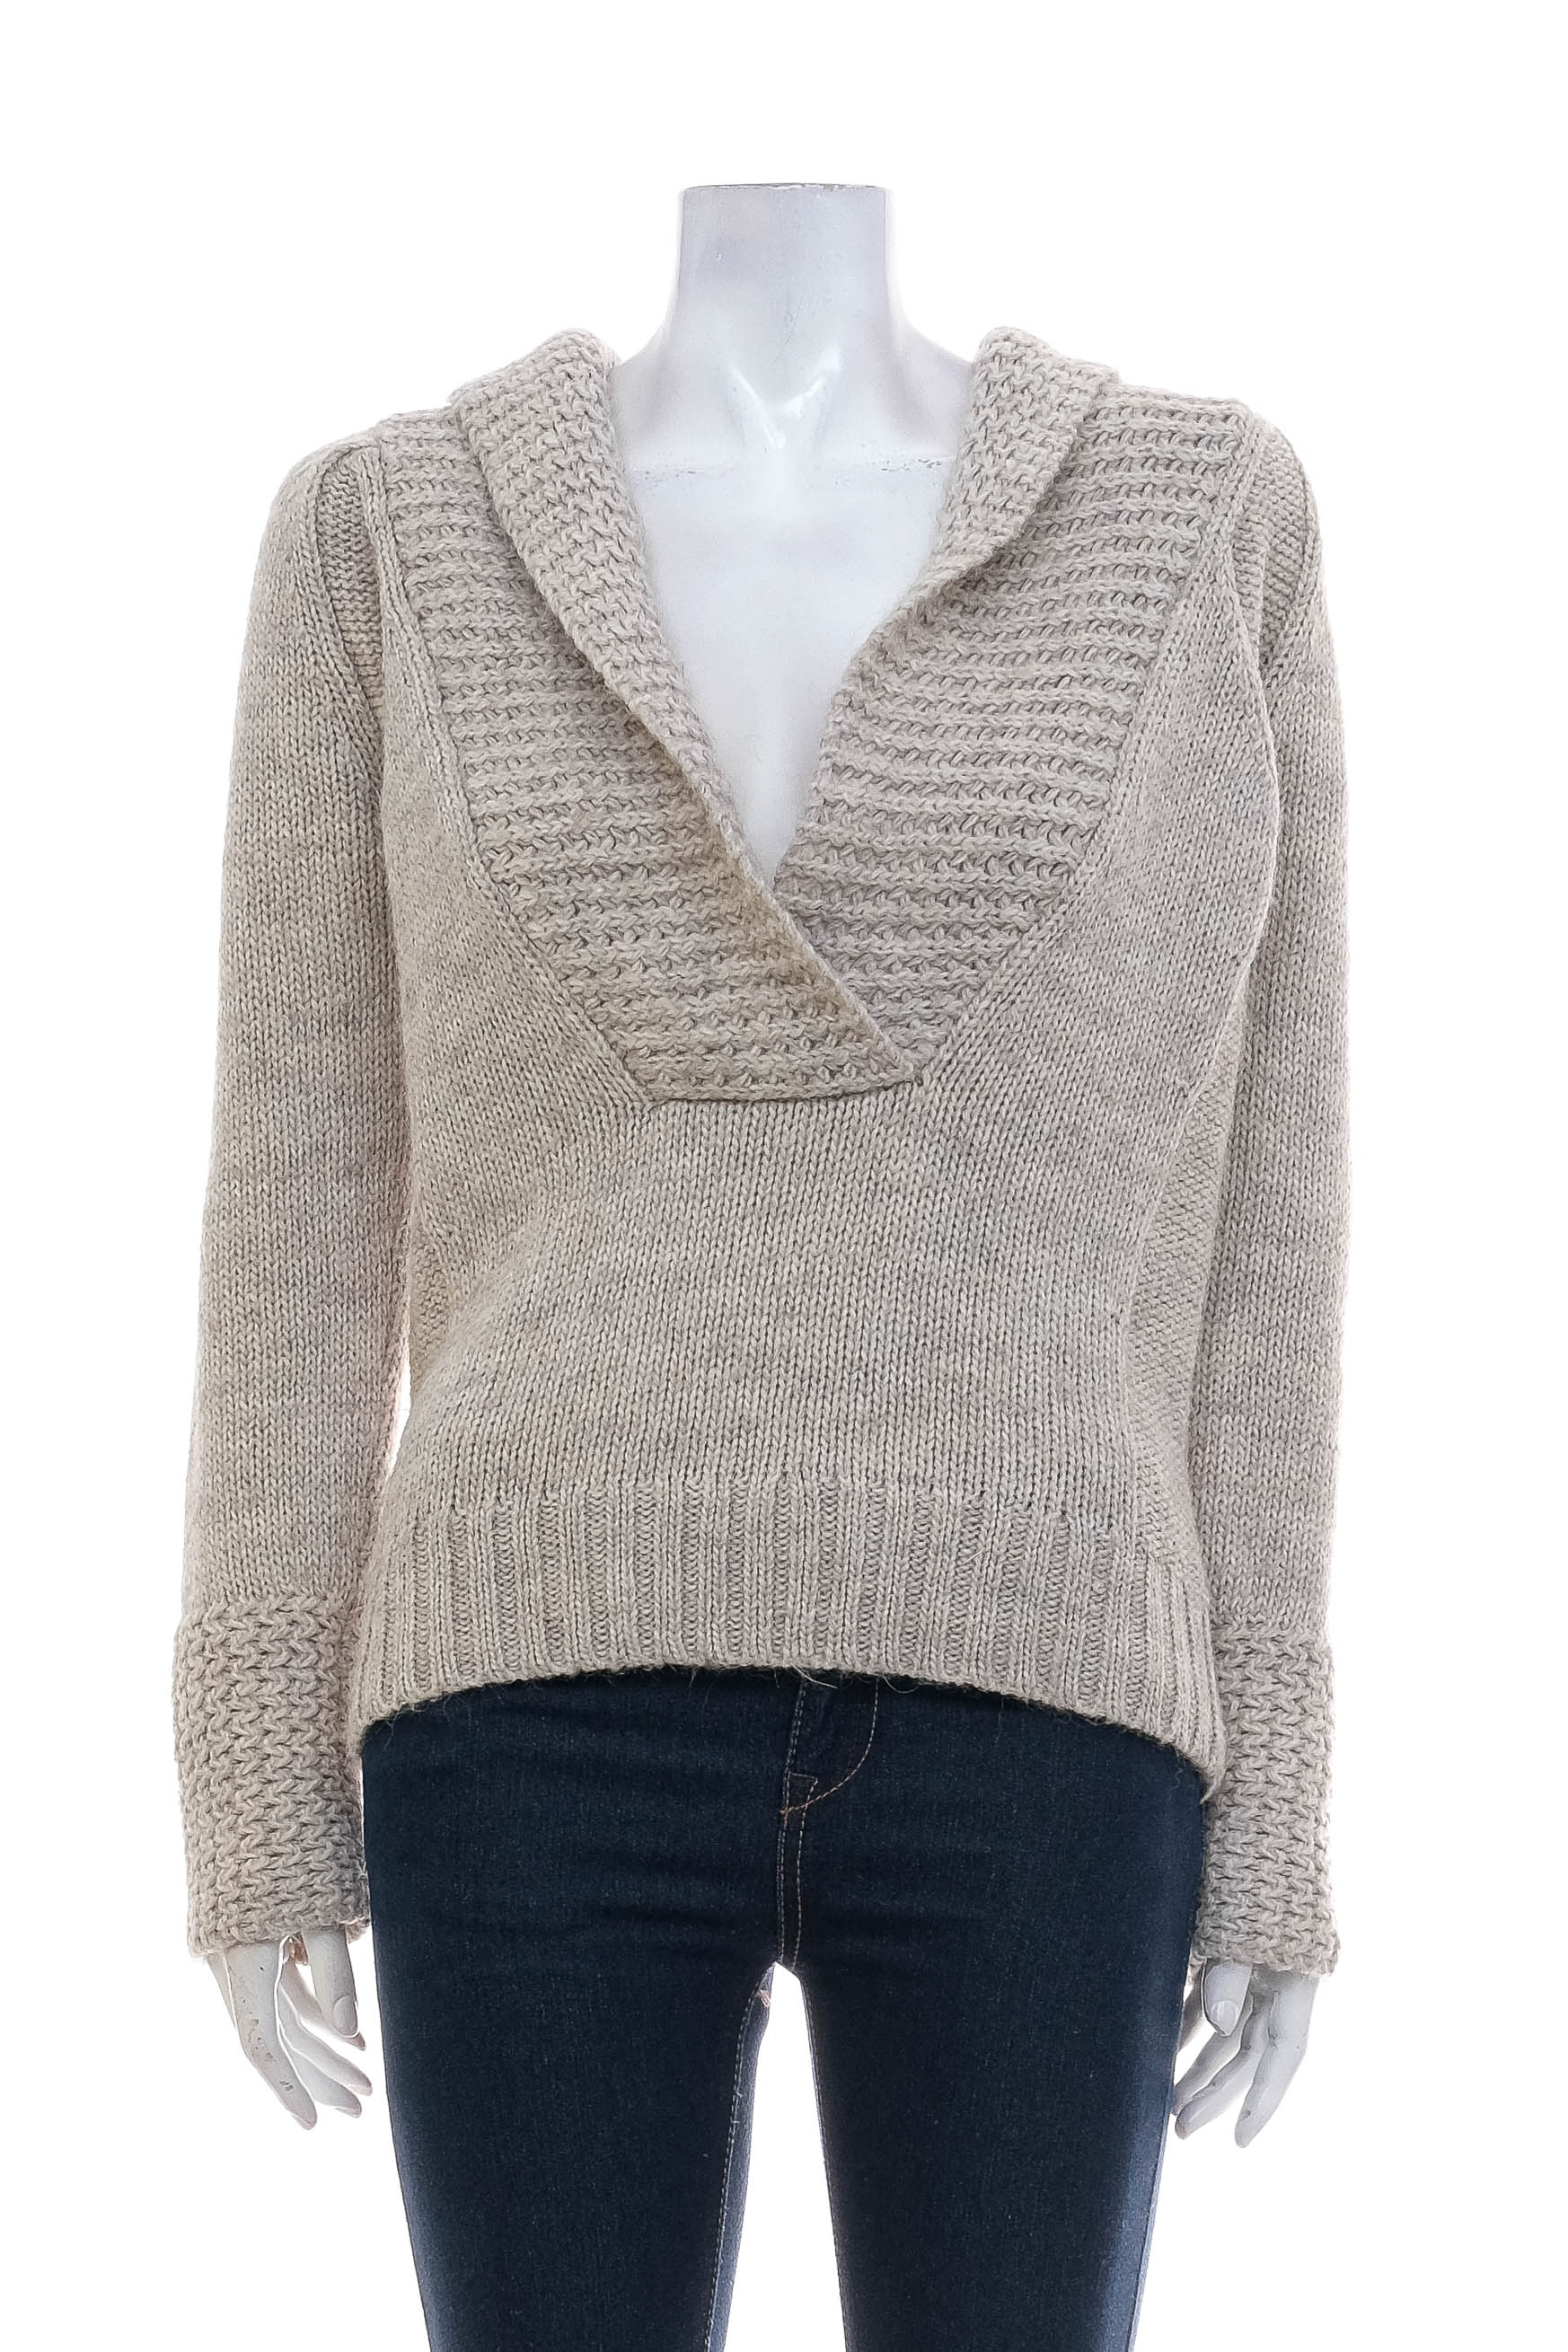 Women's sweater - ANN TAYLOR LOFT - 0